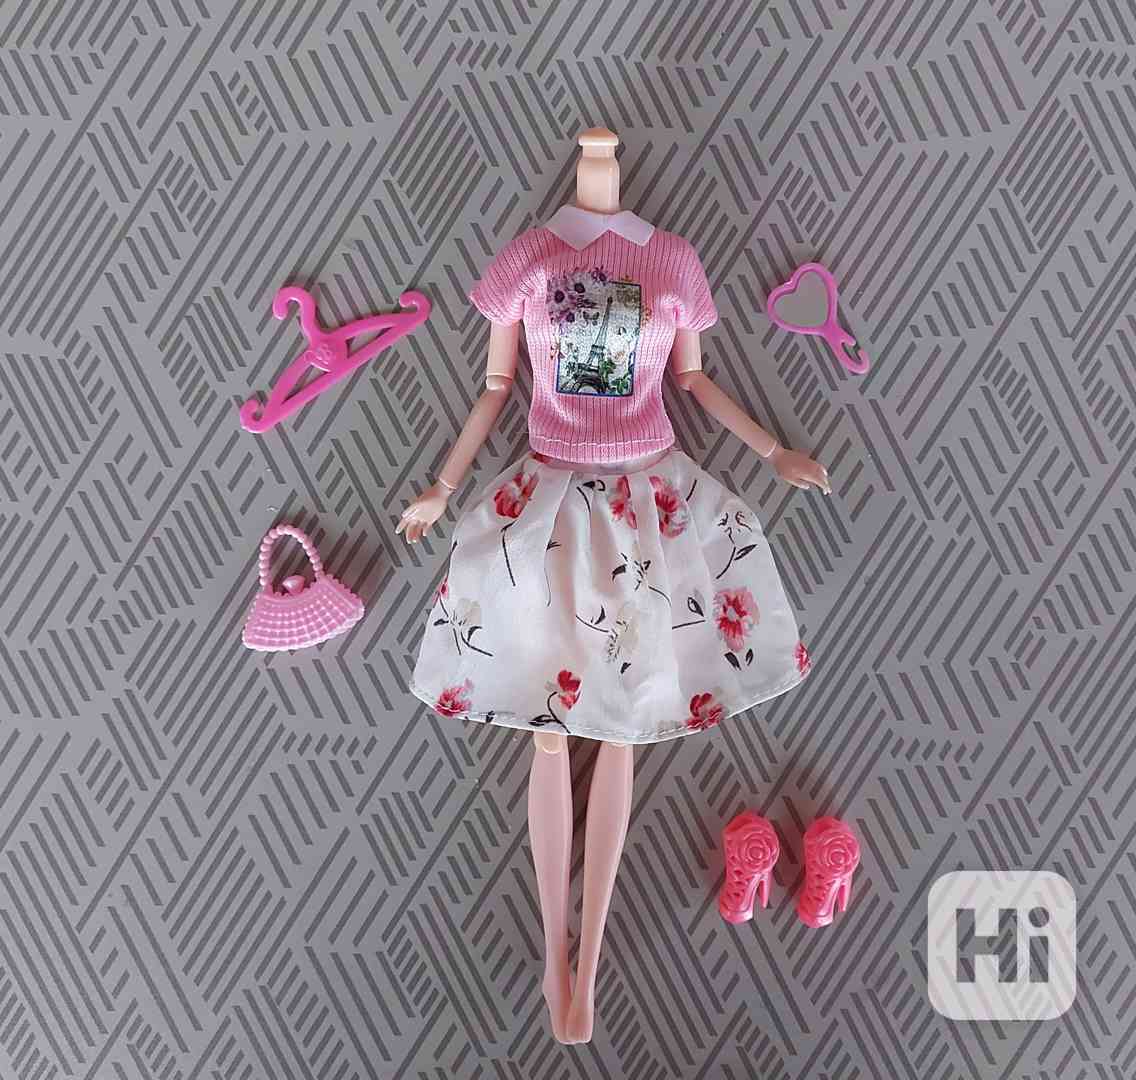 NOVÉ! Set pro Barbie, tričko + sukně + boty + kab + doplňky  - foto 1